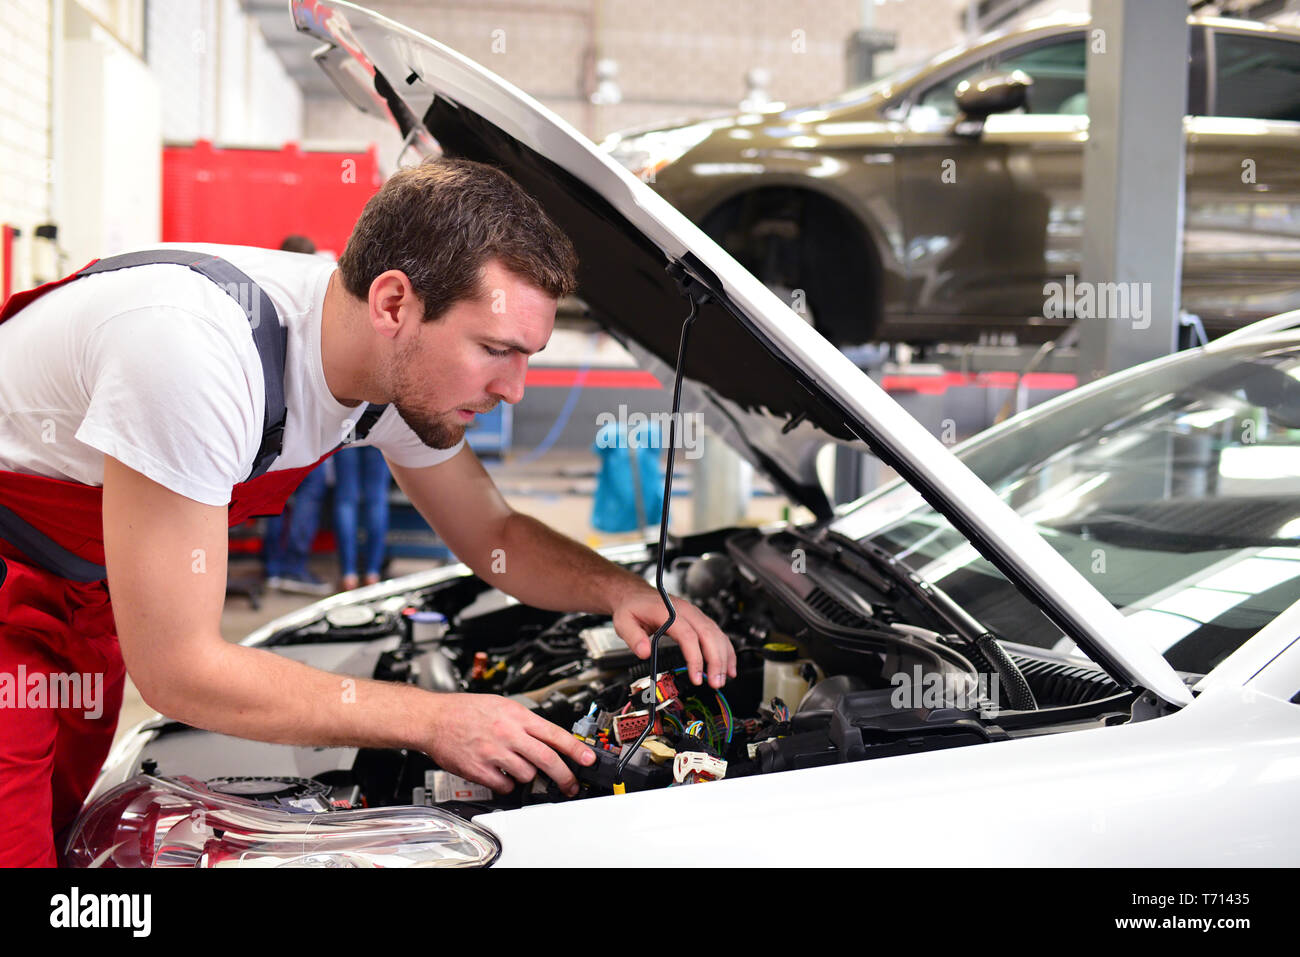 Servicio al cliente en el garaje - revisiones y reparaciones mecánicas en el motor de un coche Foto de stock